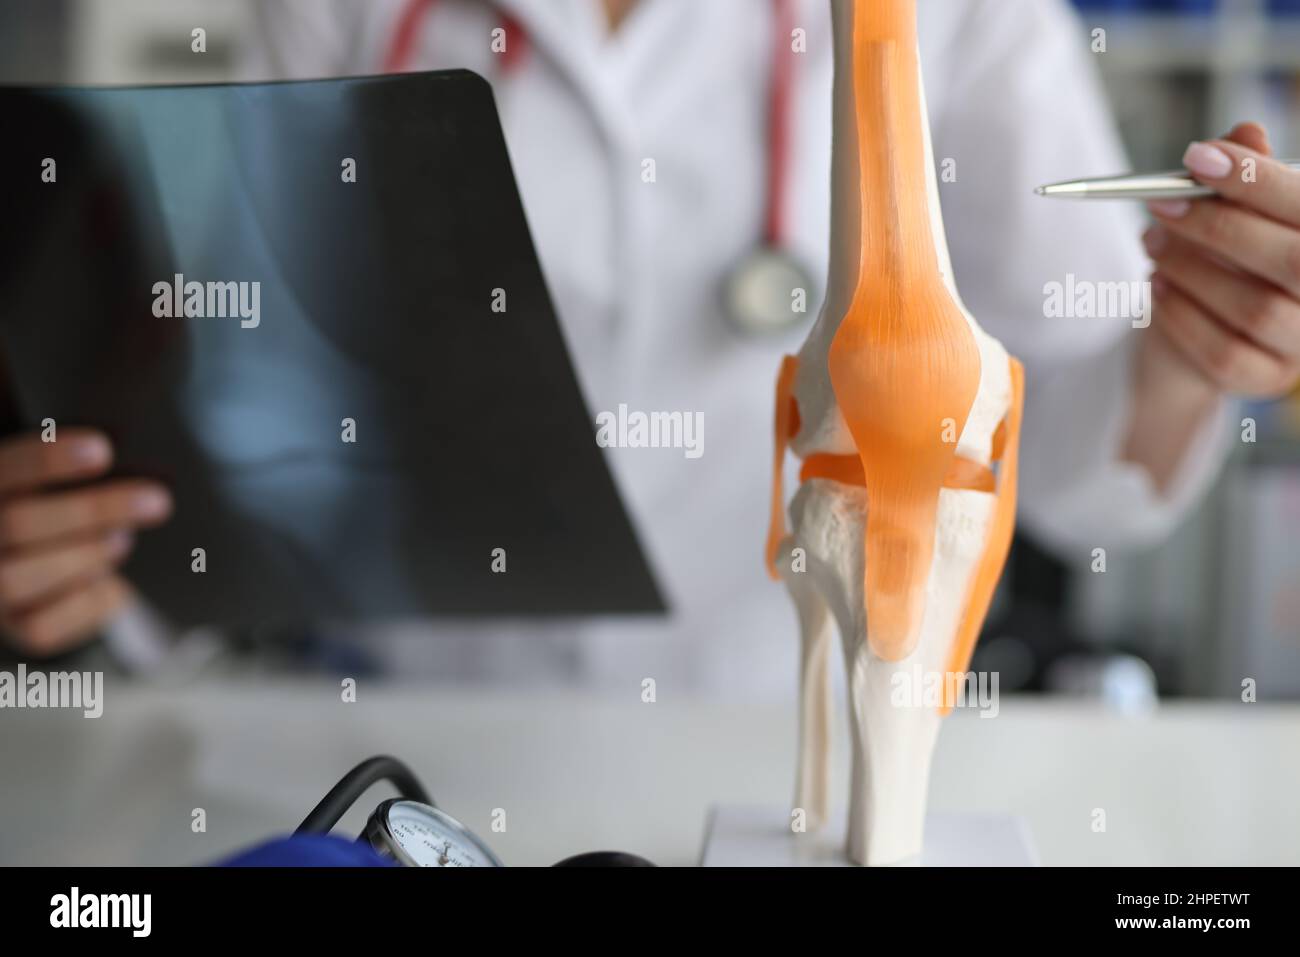 Ärztlicher Traumatologe demonstriert Knochen des Kniegelenks am künstlichen Modell und nimmt Röntgenbild Nahaufnahme Stockfoto